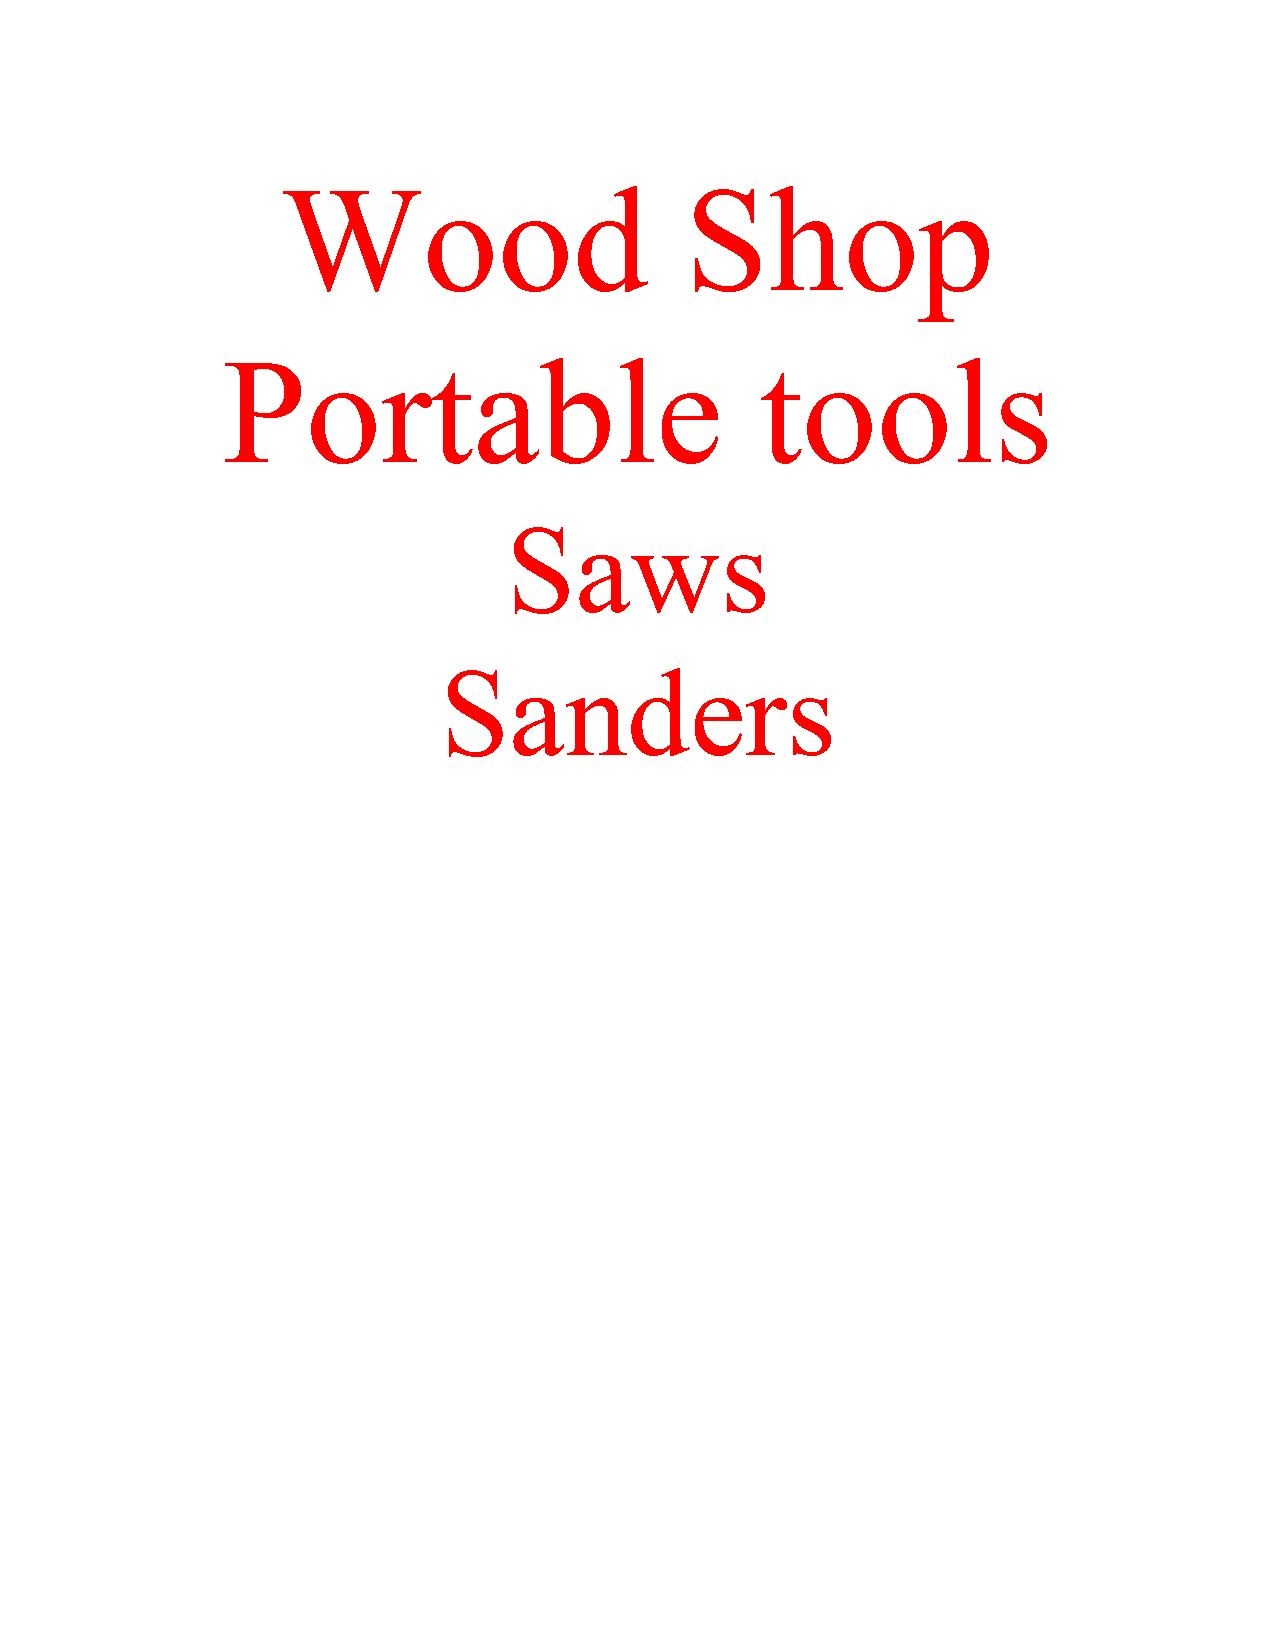 Wood shop saws sanders separator.pdf